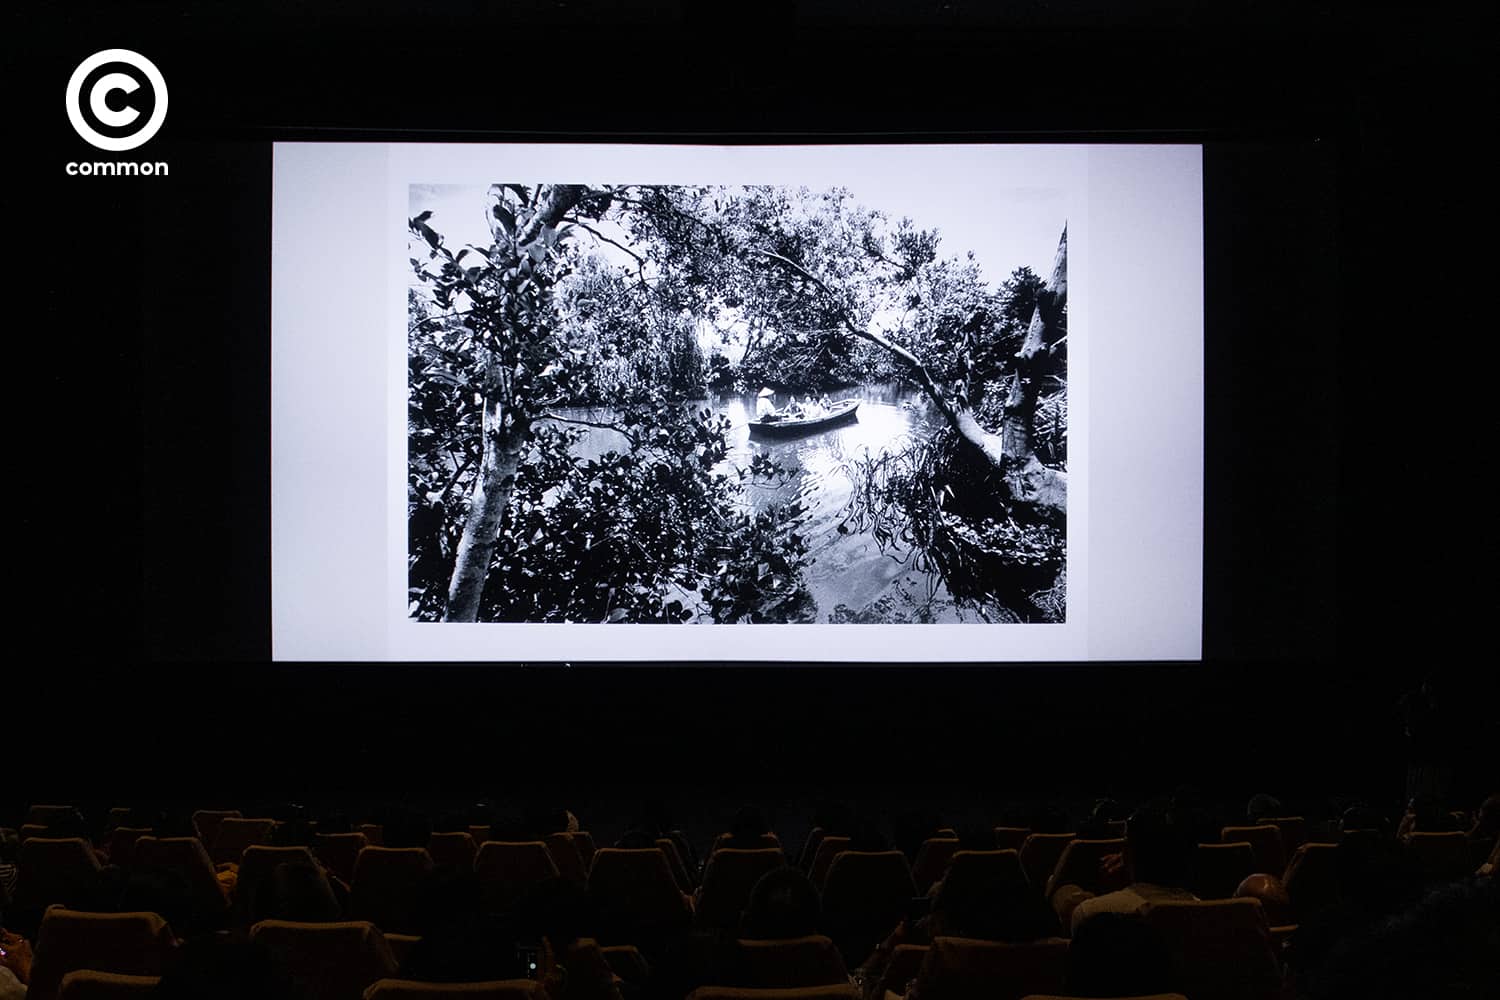 โนบุโยชิ อารากิ Nobuyoshi Araki Leica Gallery Bangkok ช่างภาพ ภาพถ่าย ญี่ปุ่น Life by Film